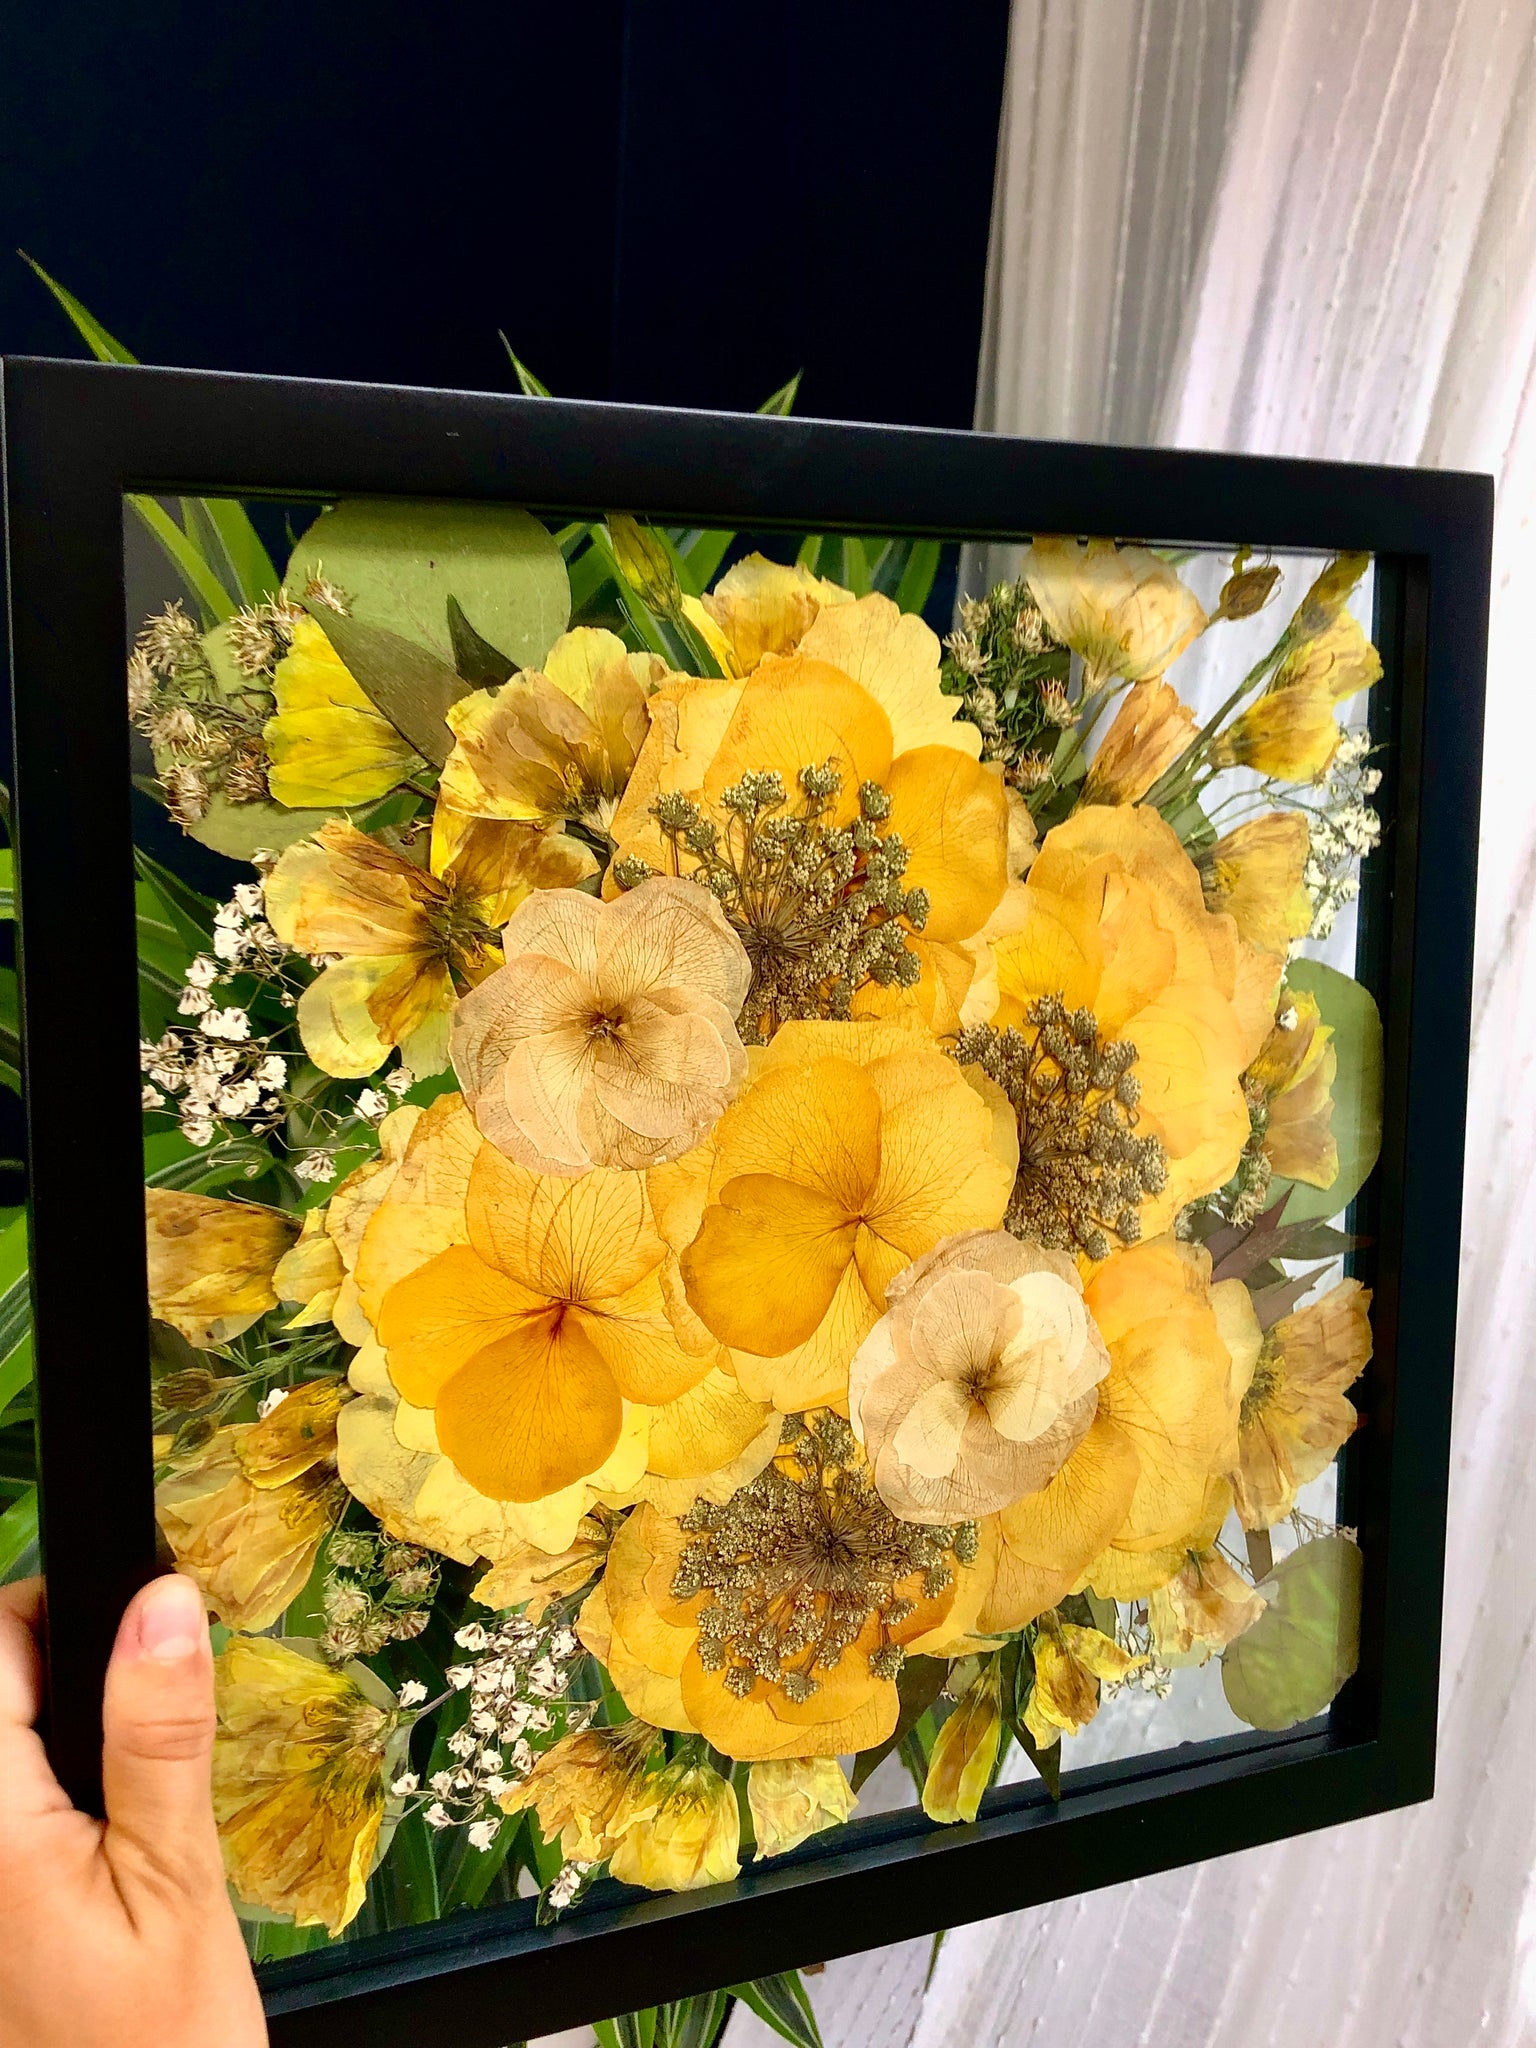 Custom Floral Preservation, Framed Pressed Flowers, Wedding